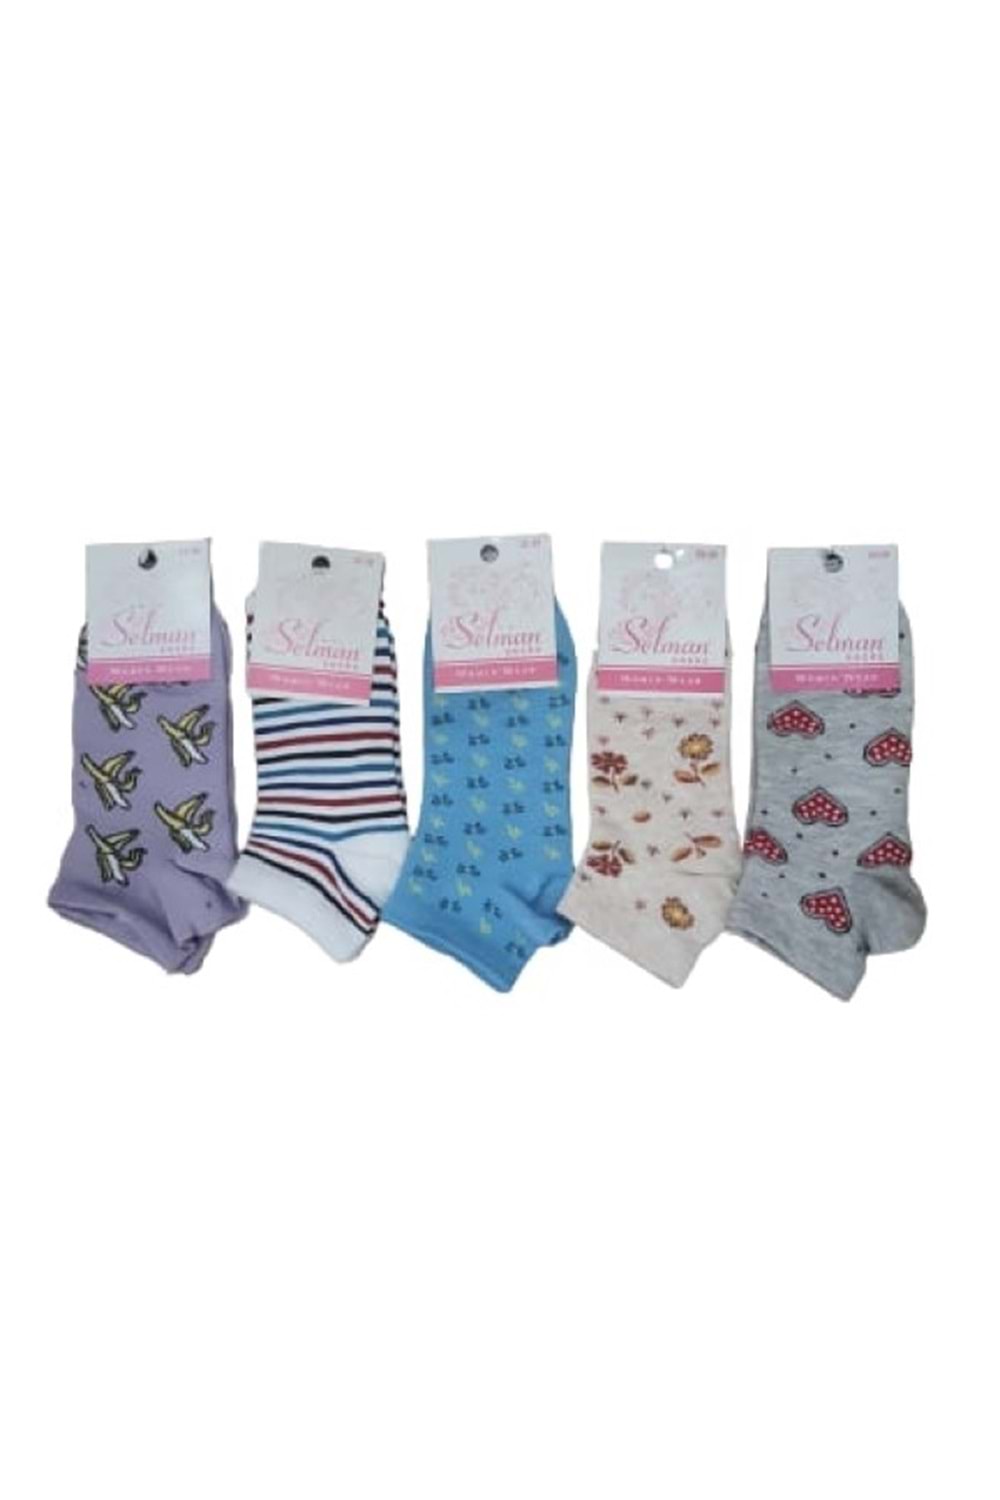 Selman Socks Kadın Pamuk Desenli Patik Çorap 36-40 (5 Adet) S 01582 - Karışık Renkli - 35-39